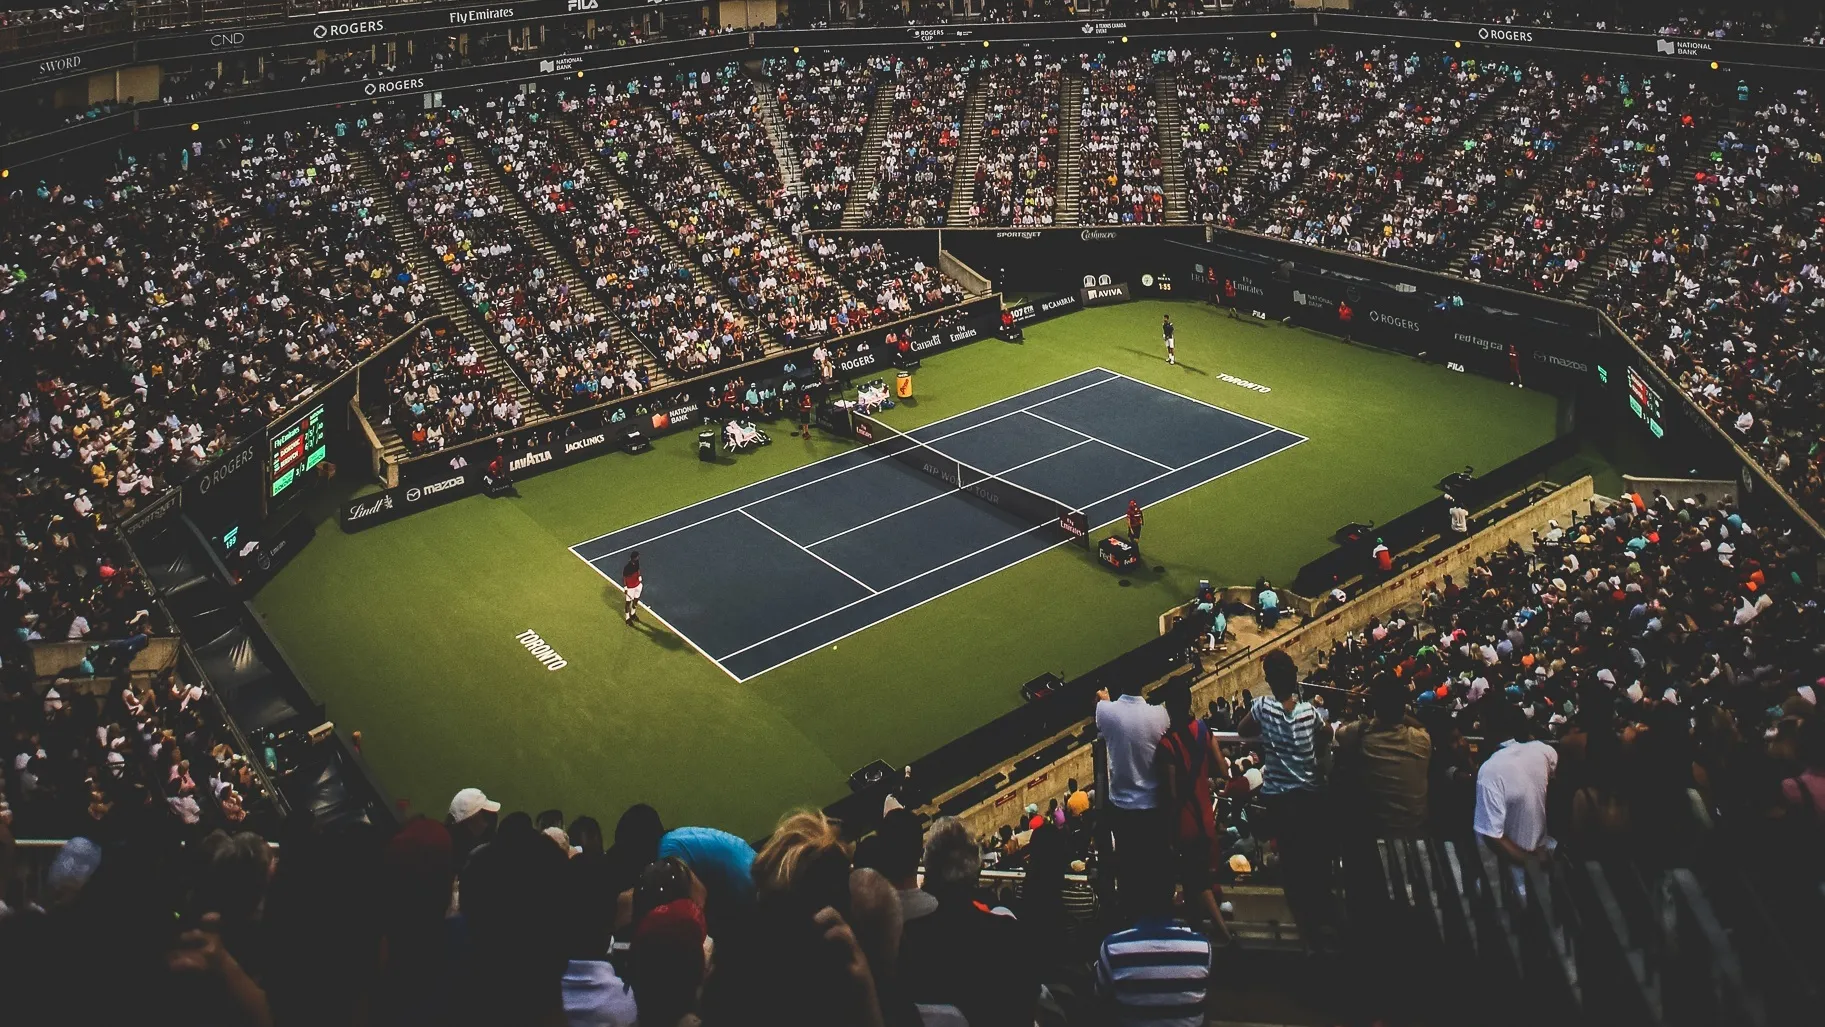 visione dall'alto degli spalti di evento sportivo di tennis